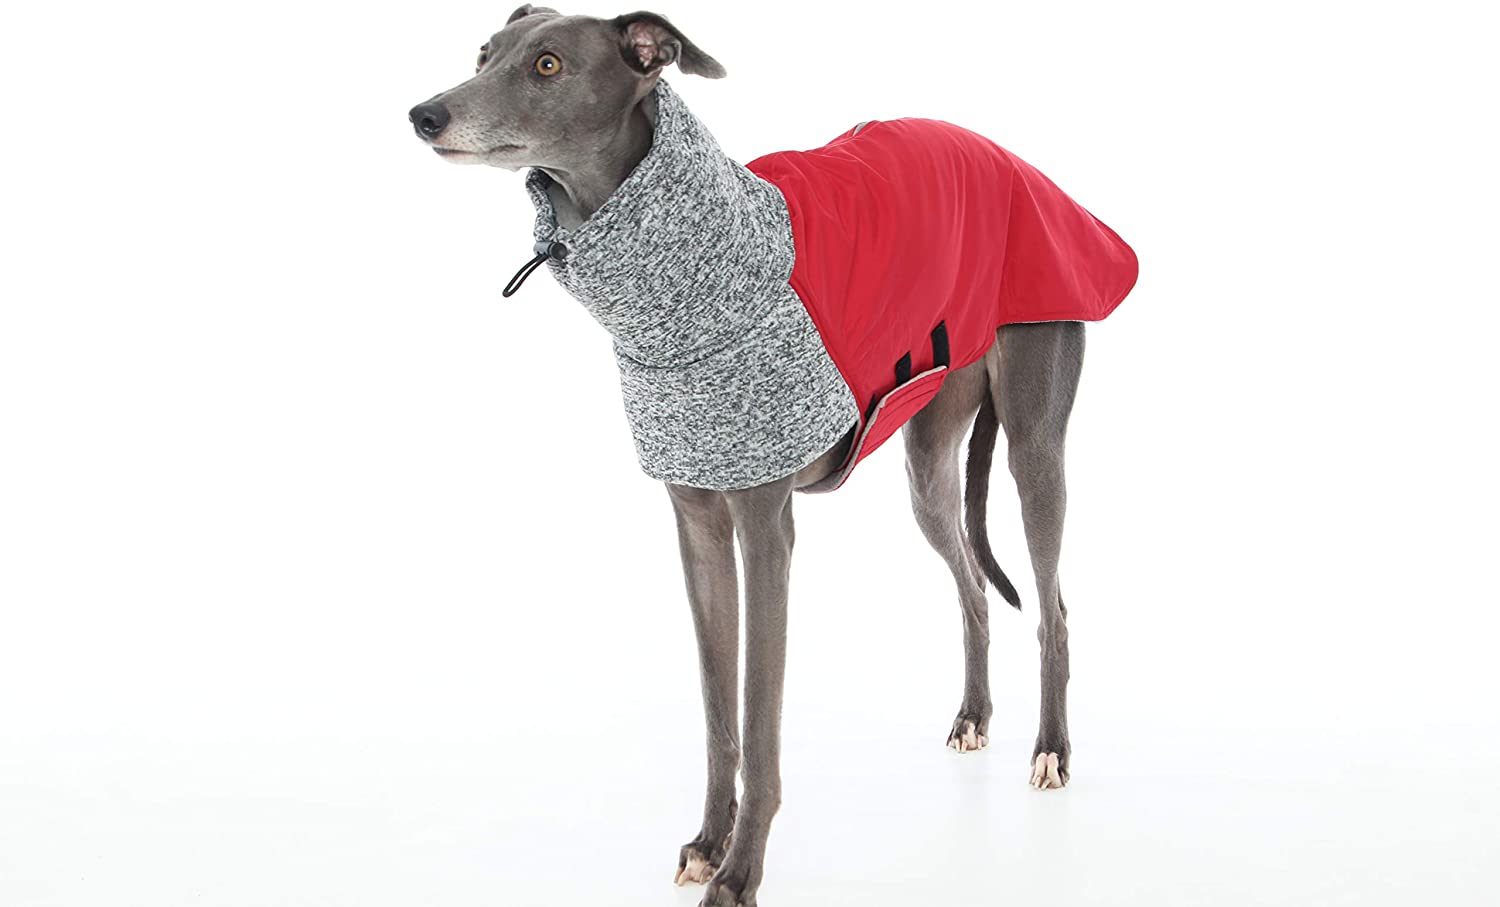  The Trendy Whippet Abrigo de Forro Polar para Todo Tipo de Clima, Color Rojo y Gris Oscuro, diseño de Galgo, Lurcher, Saluki, Sighthound 